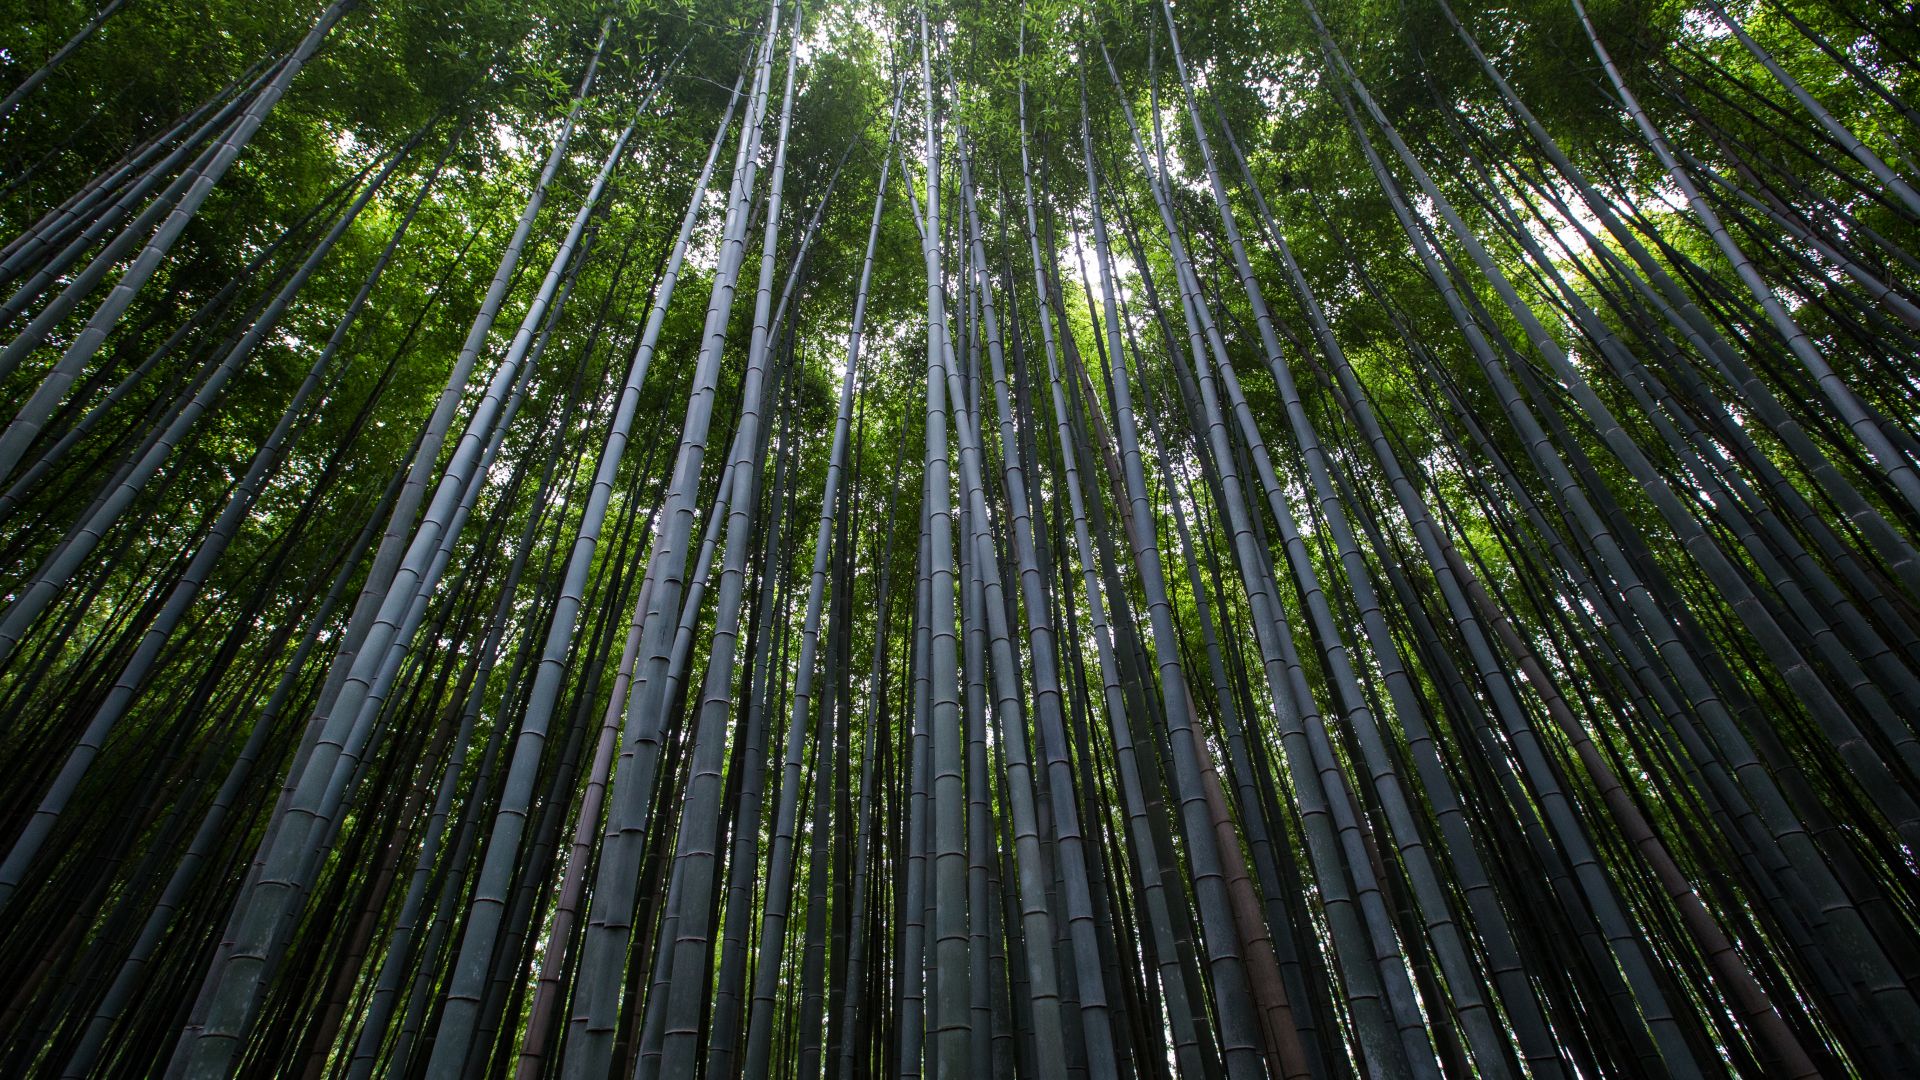 Лес, 4k, 5k, 8k, деревья, зеленый, бамбук, Forest, 4k, 5k wallpaper, 8k, trees, green, bamboo (horizontal)